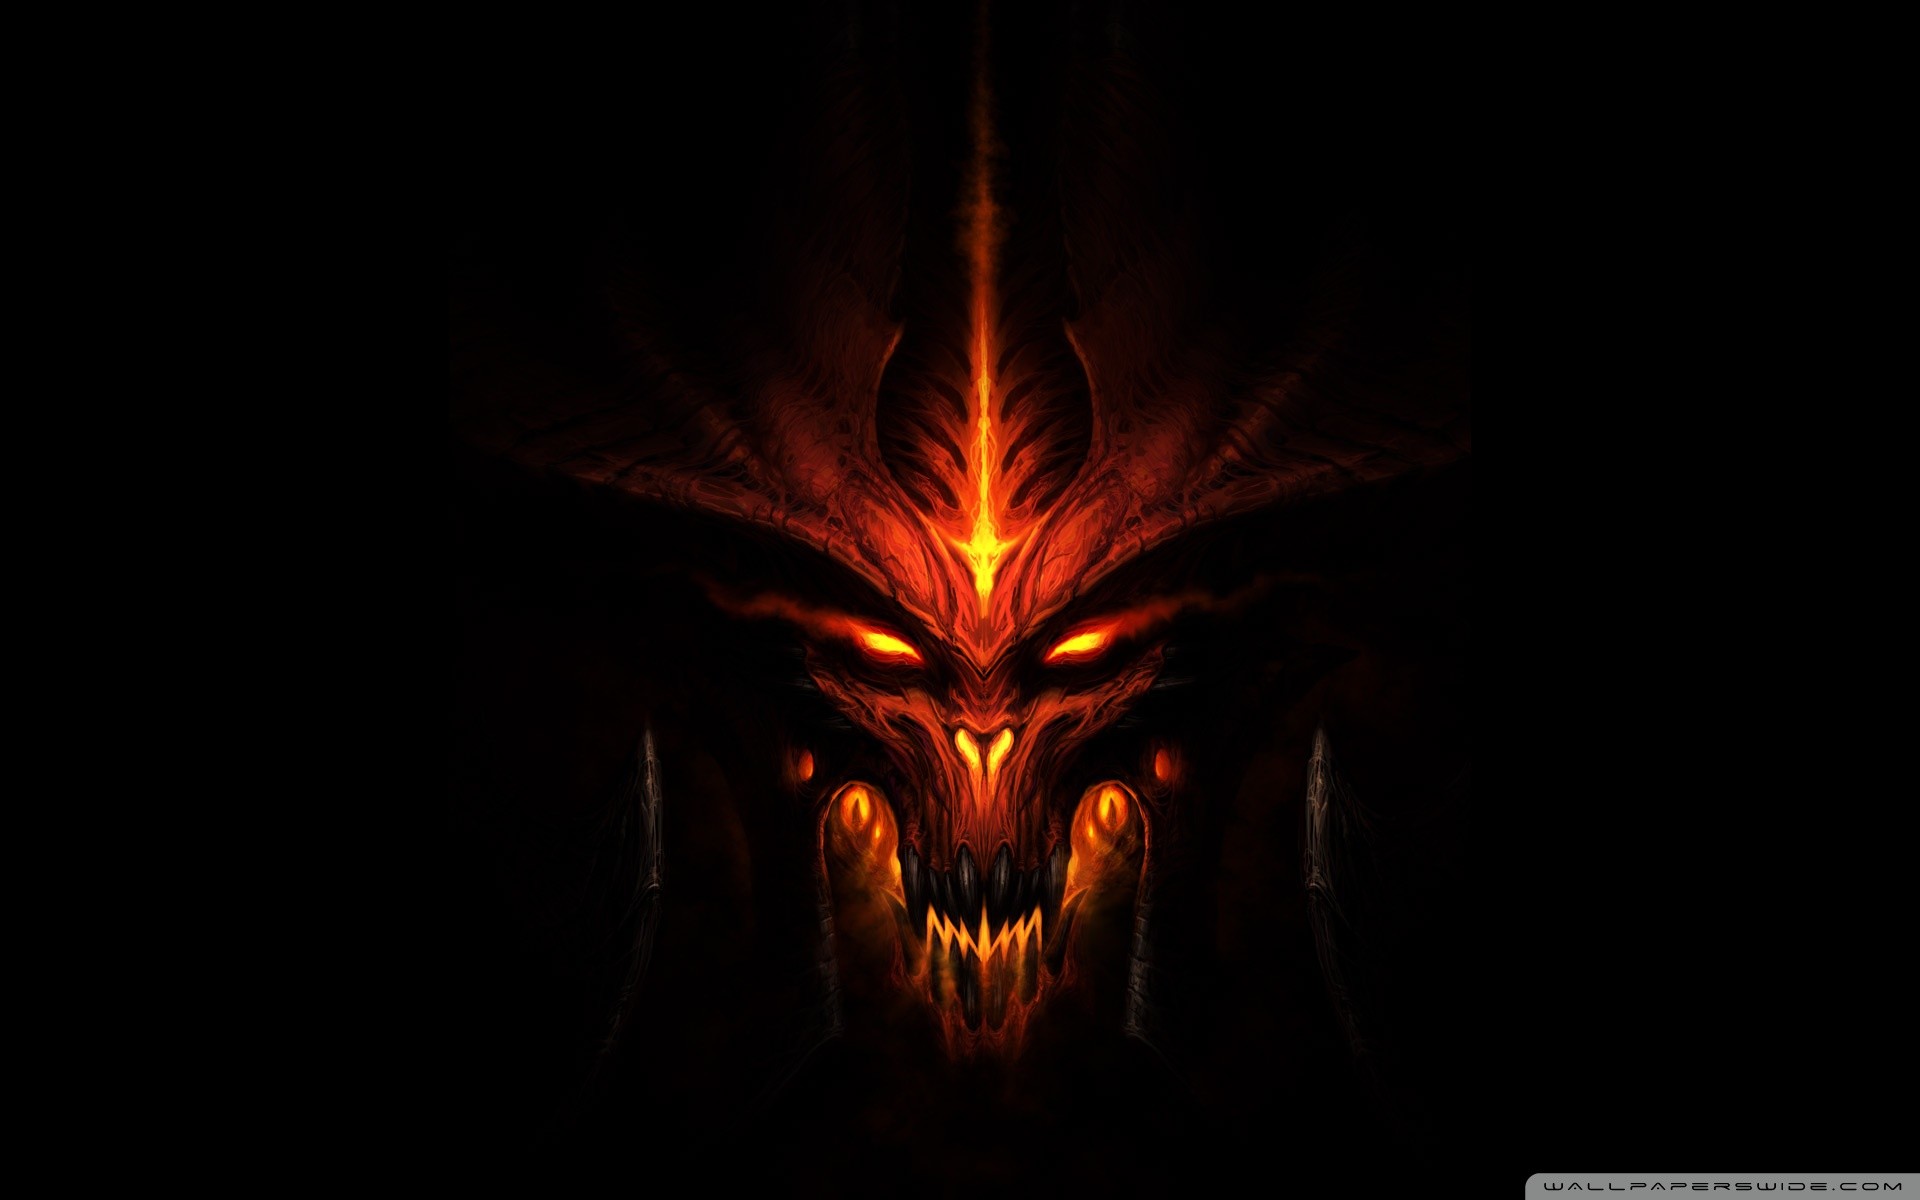 Diablo 3 Screensaver Wallpapers